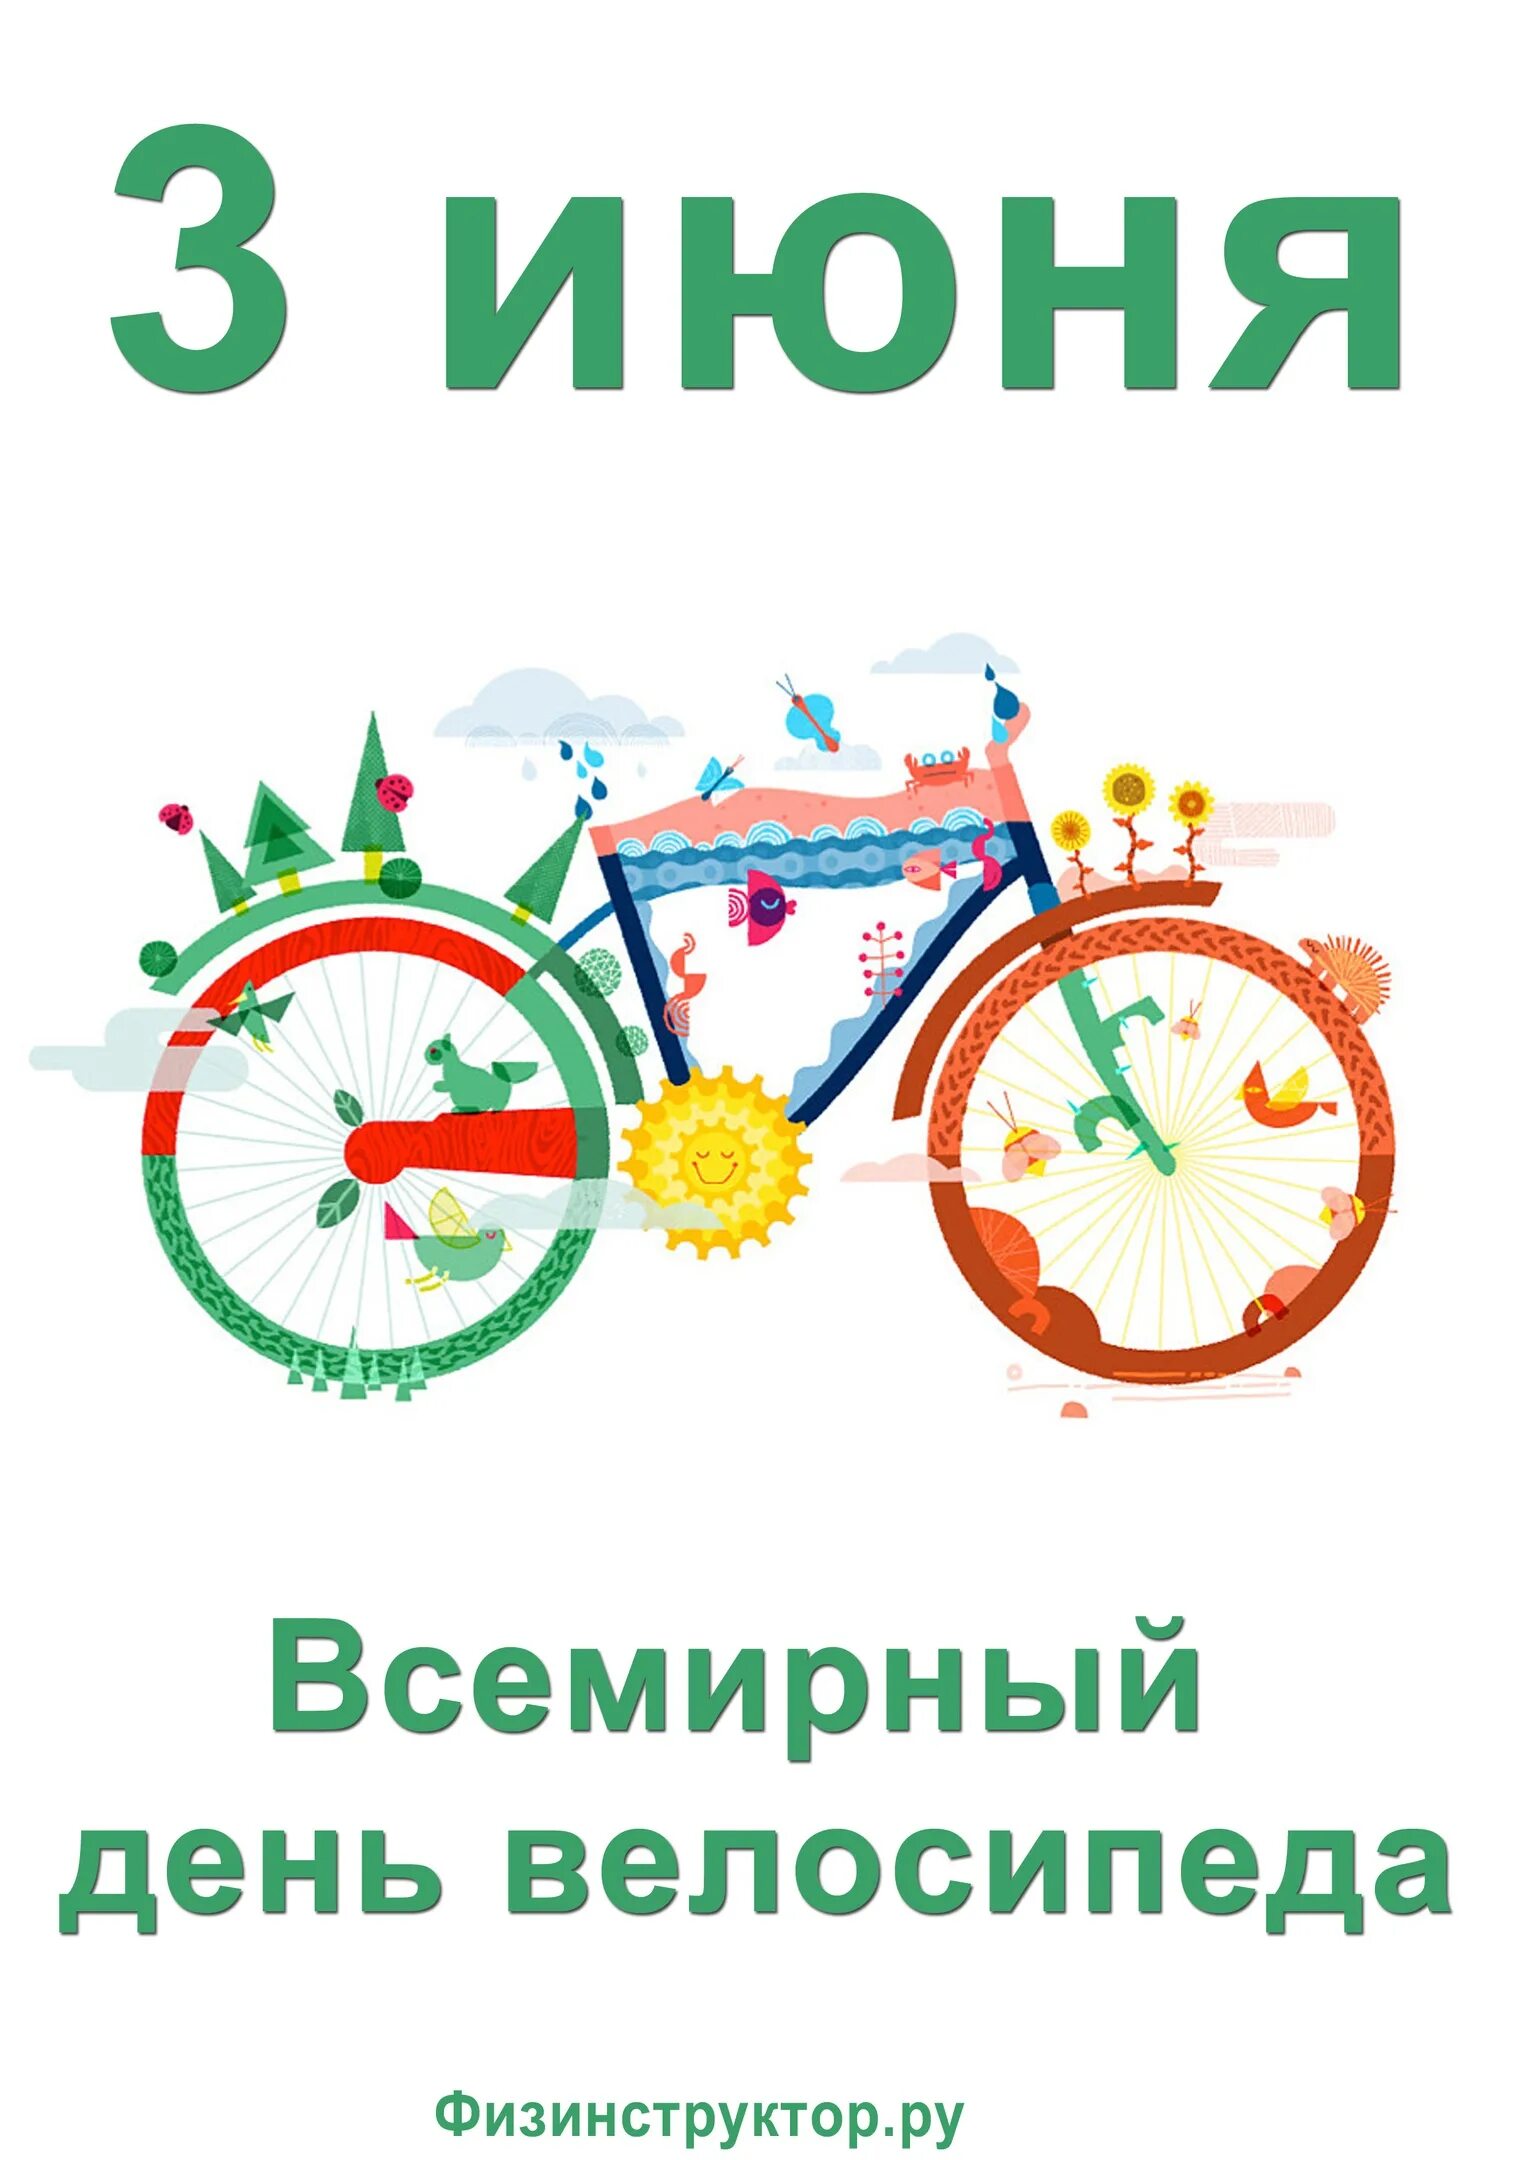 3 Июня праздник Всемирный день велосипеда. 3 Июня день велосипеда. 03 Июня - Всемирный день велосипеда. Всемирный день велосипеда поздравления. 30 мая 3 июня